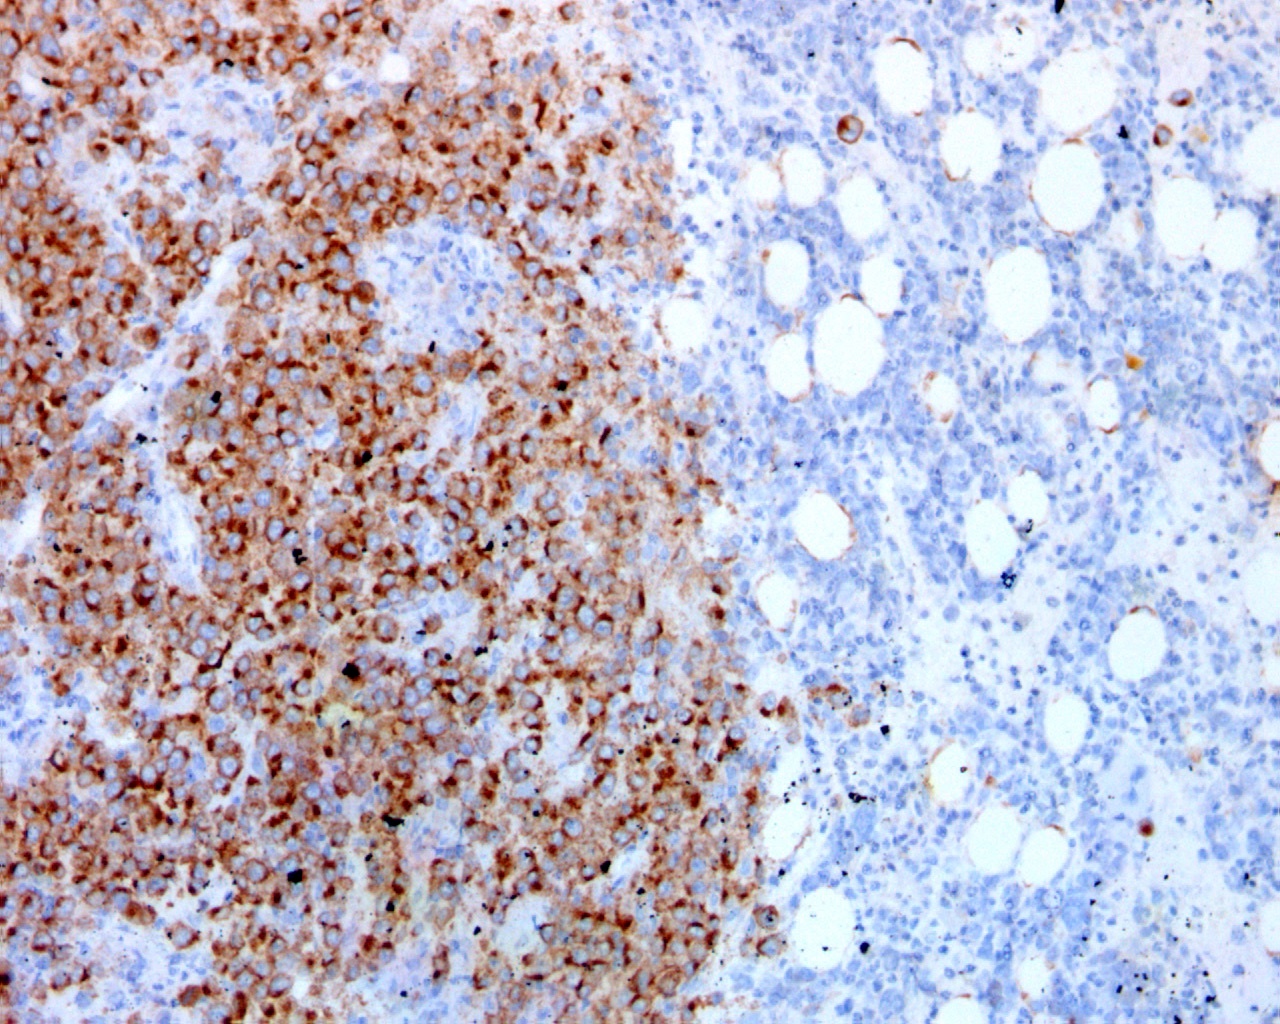 Granular ALK positivity in tumor cells